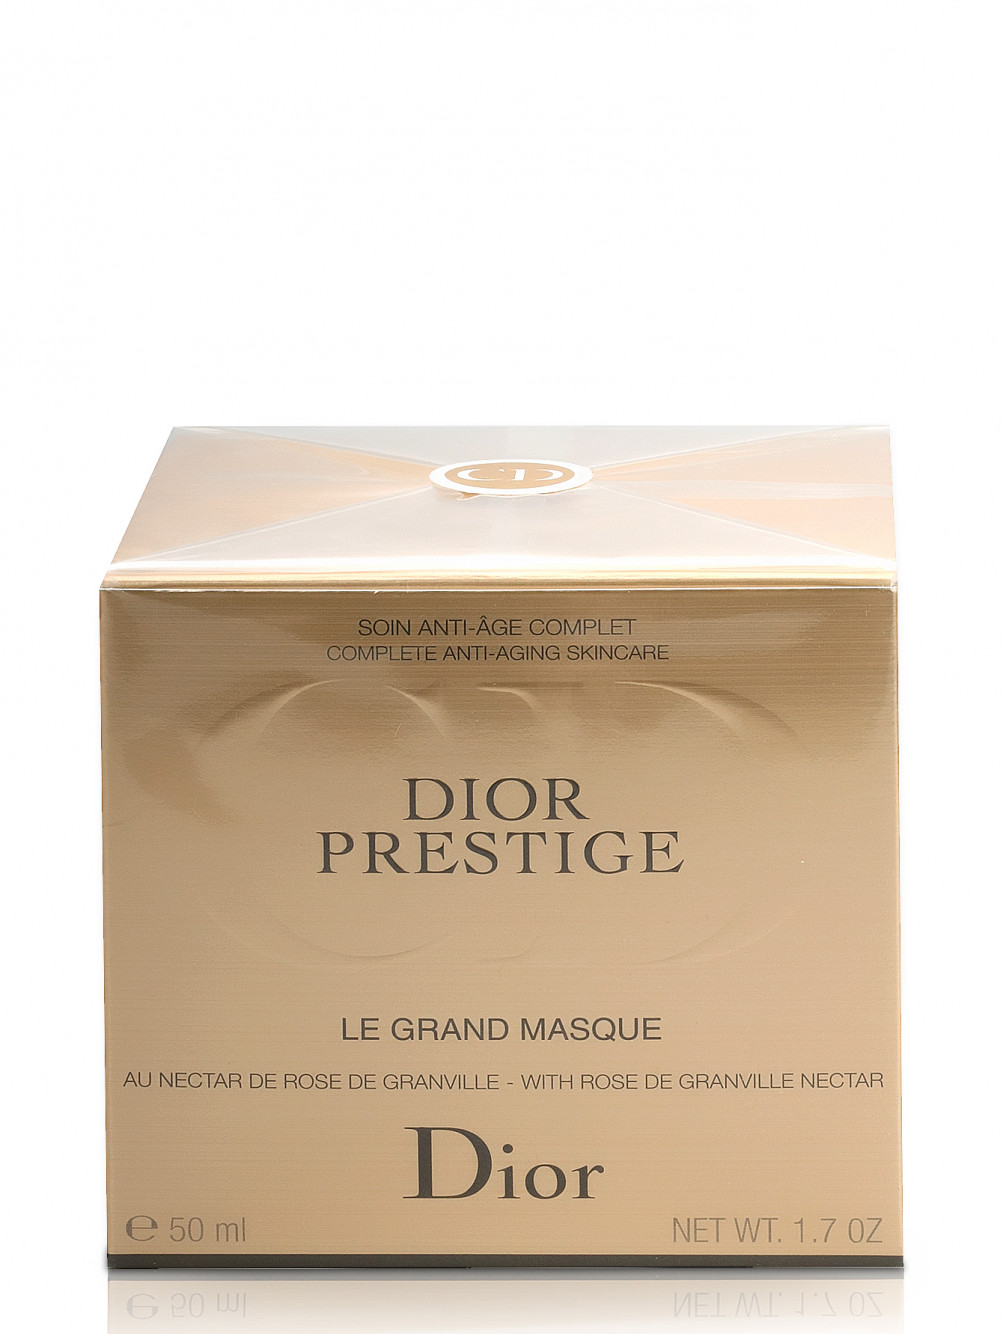 Dior Prestige Интенсивная маска для лица, насыщенная кислородом 50 мл - Модель Верх-Низ